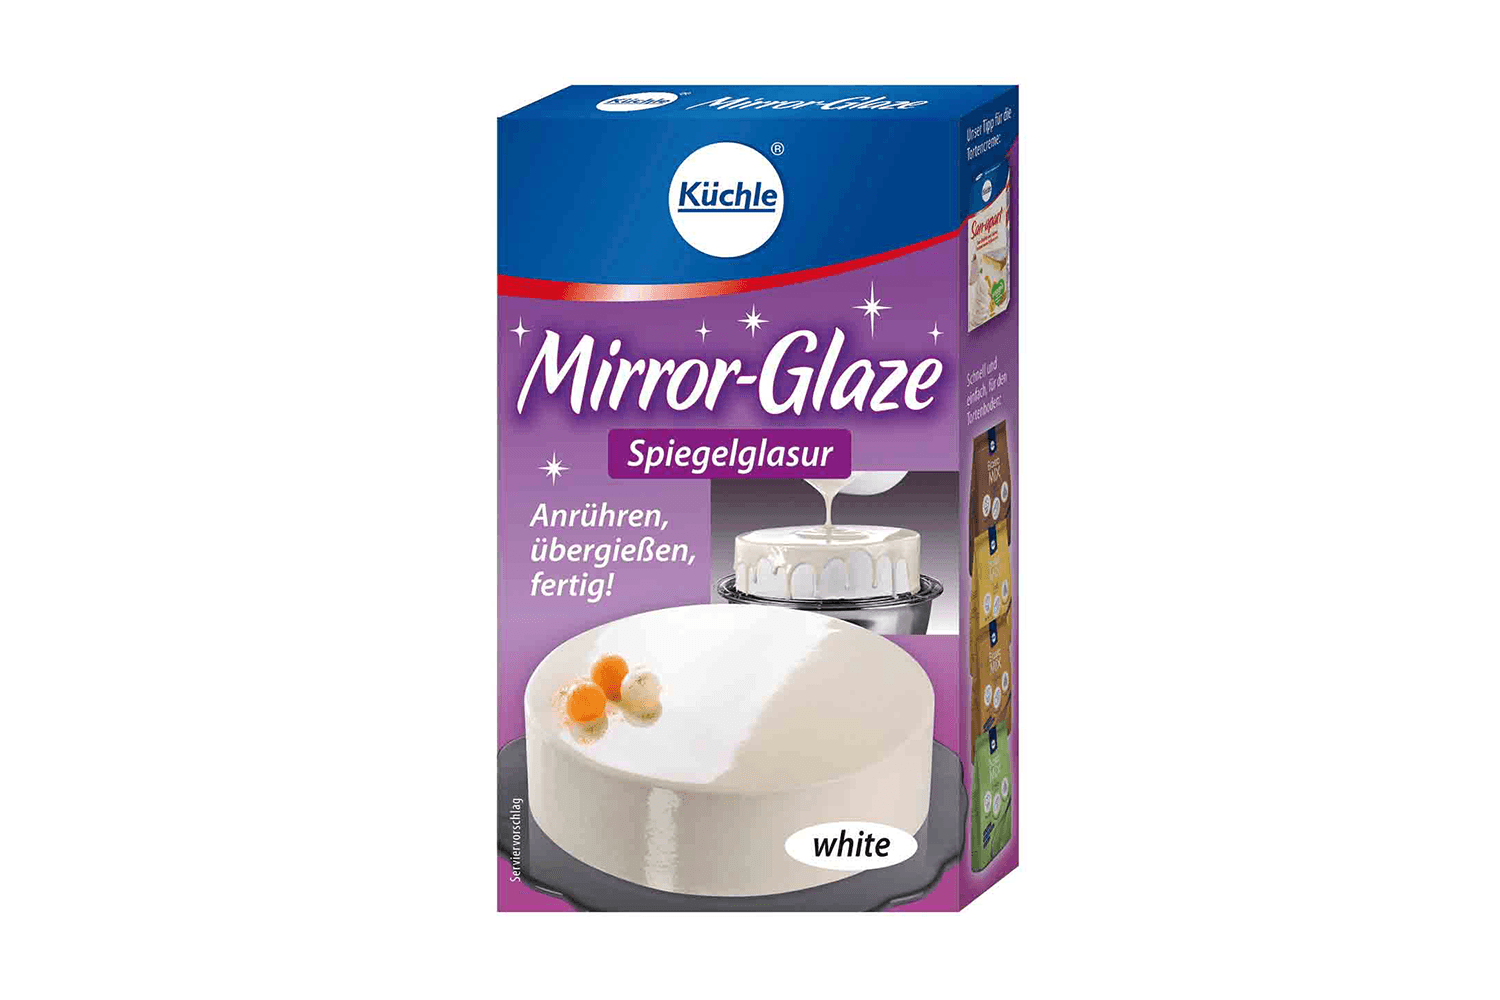 Eine Packung Mirror Glaze white